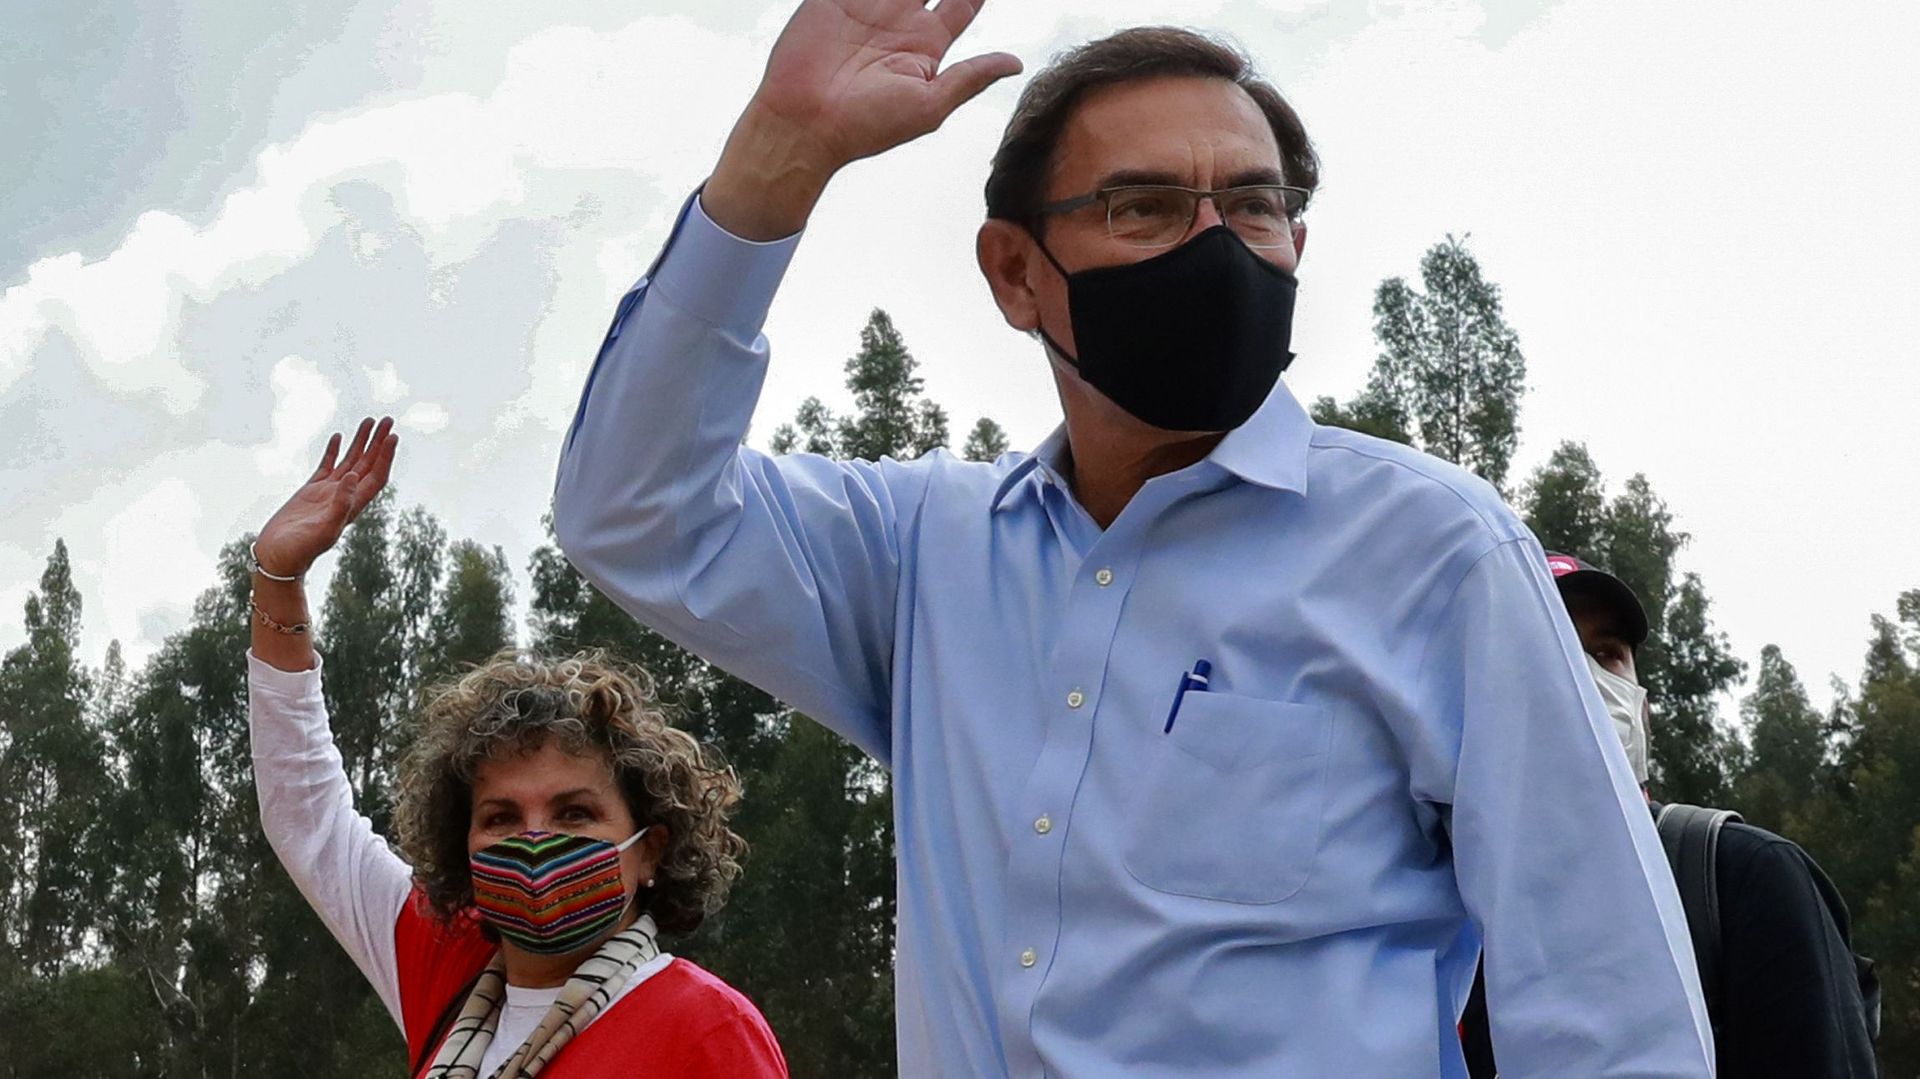 Photo distribuée par la présidence péruvienne du président péruvien Martin Vizcarra saluant lors de l'inspection des travaux publics à Jauja, région de Junin, Pérou, le 9 novembre 2020, quelques heures avant d'être mis en accusation. Vizcarra a été mis en